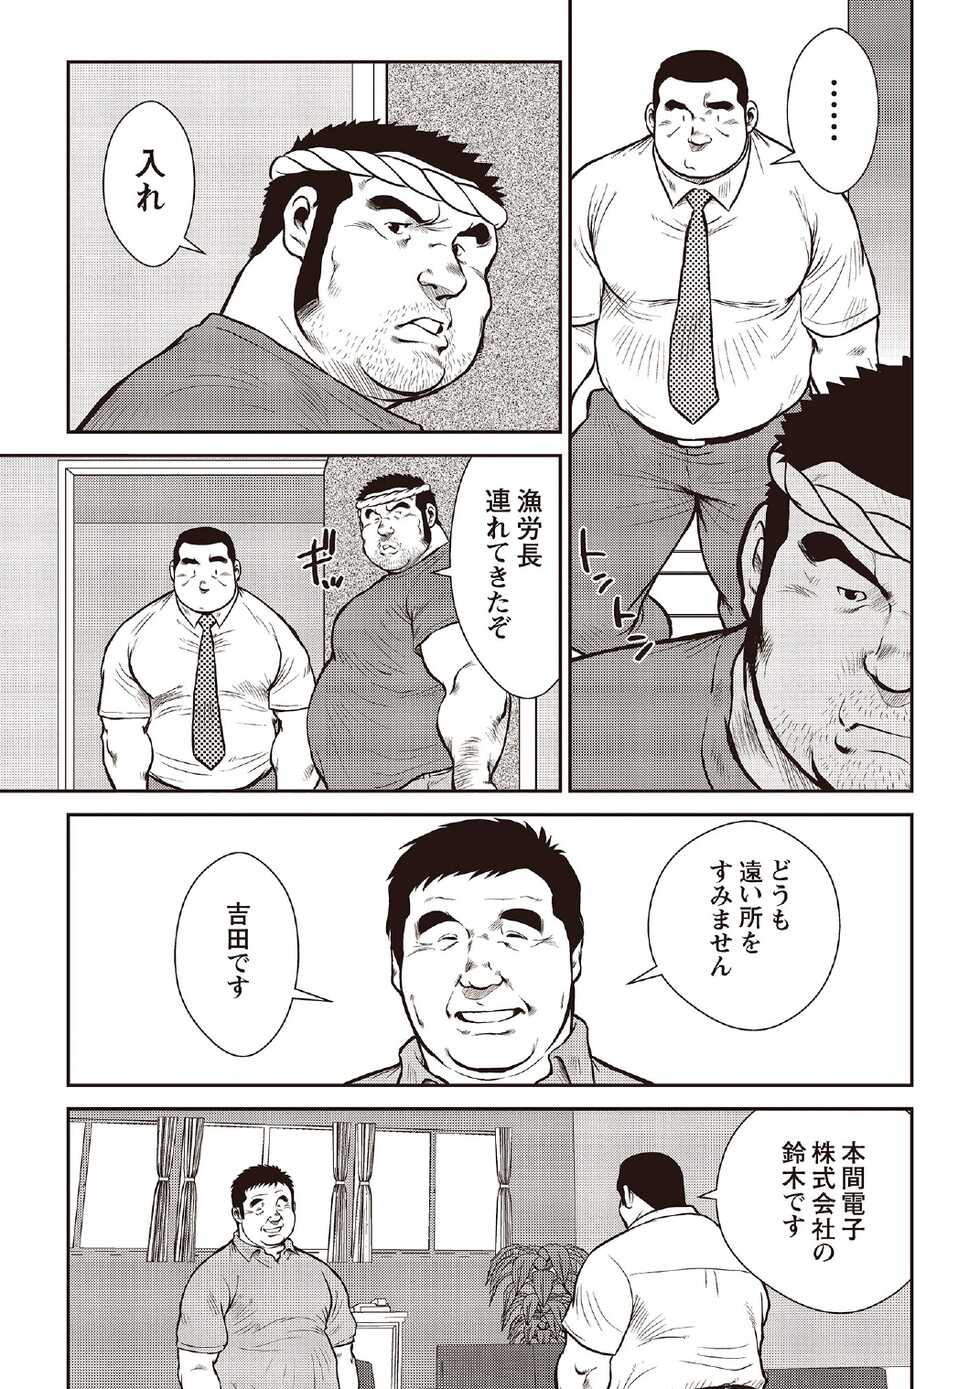 [Ebisubashi Seizou] Ebisubashi Seizou Tanpen Manga Shuu 2 Fuuun! Danshi Ryou [Bunsatsuban] PART 2 Bousou Hantou Taifuu Zensen Ch. 1 + Ch. 2 [Digital] - Page 5